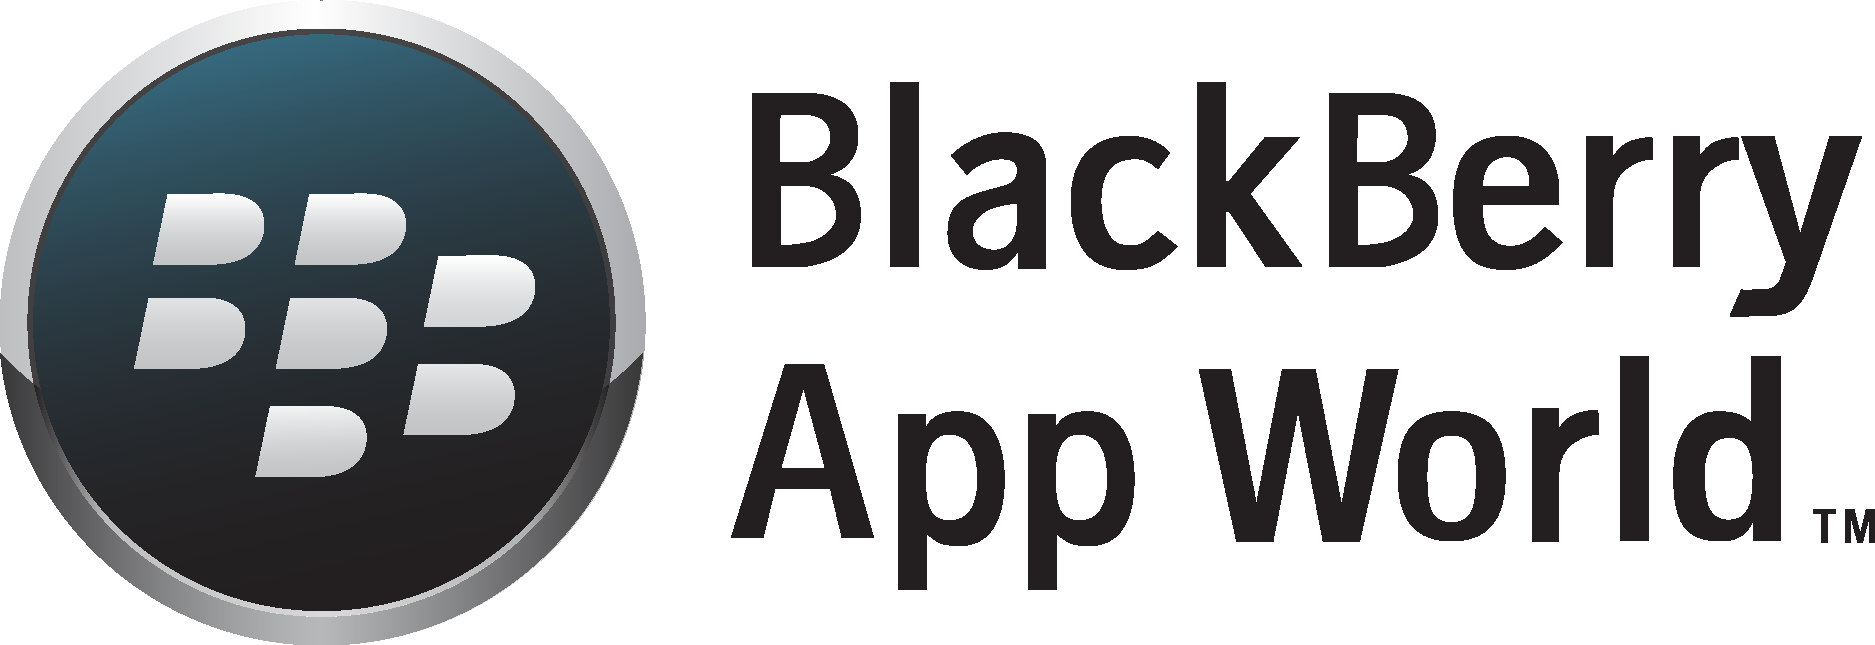 BlackBerry App World Logo Vector